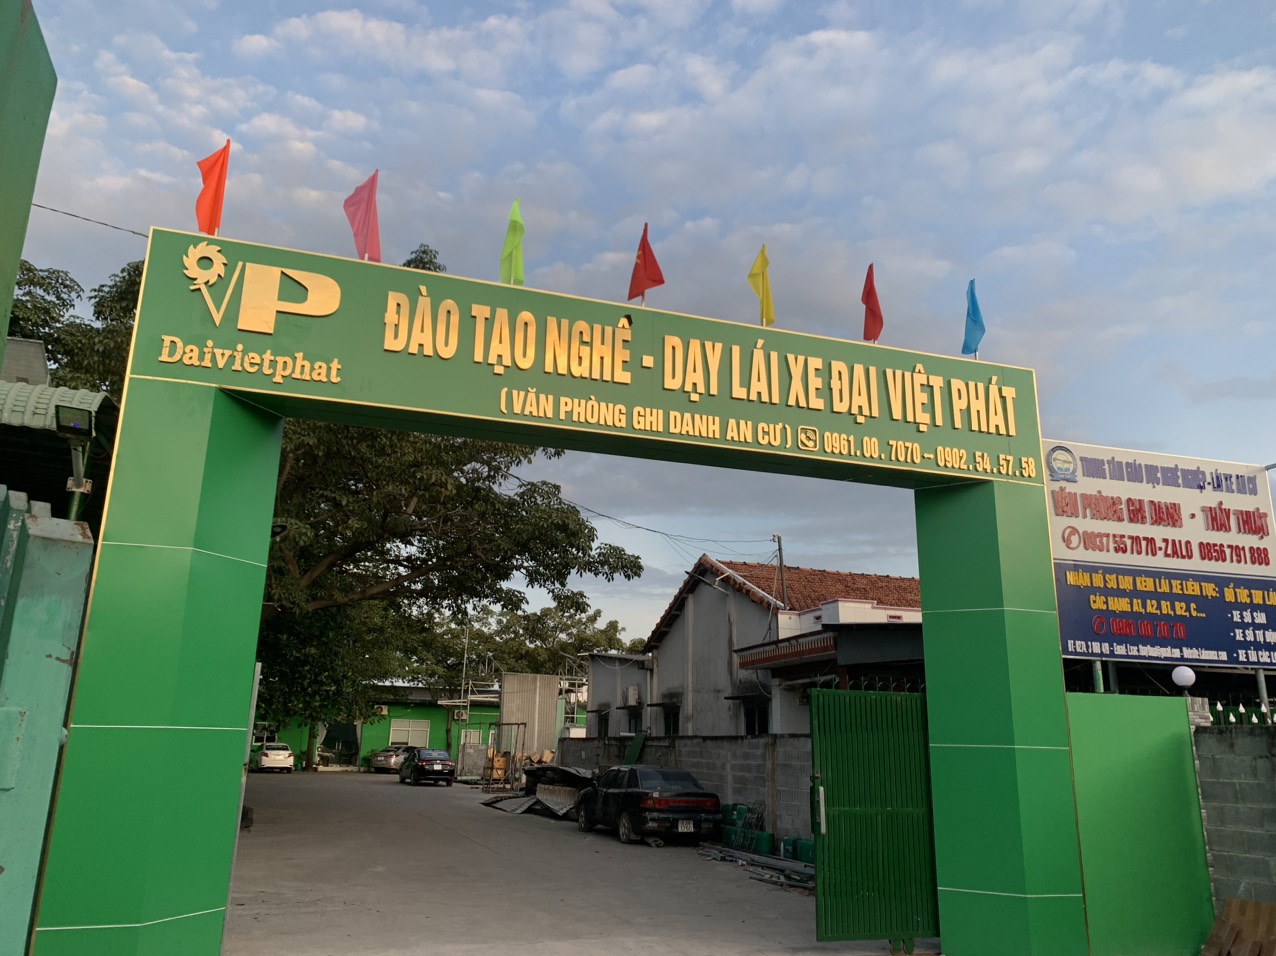 Van Phong Day lai xe o to Thu Dau Mot Ben Cat Bau Bang Tan Uyen Dau tieng Thuan An Binh Duong A1 A2 B1 B2 C D E 3